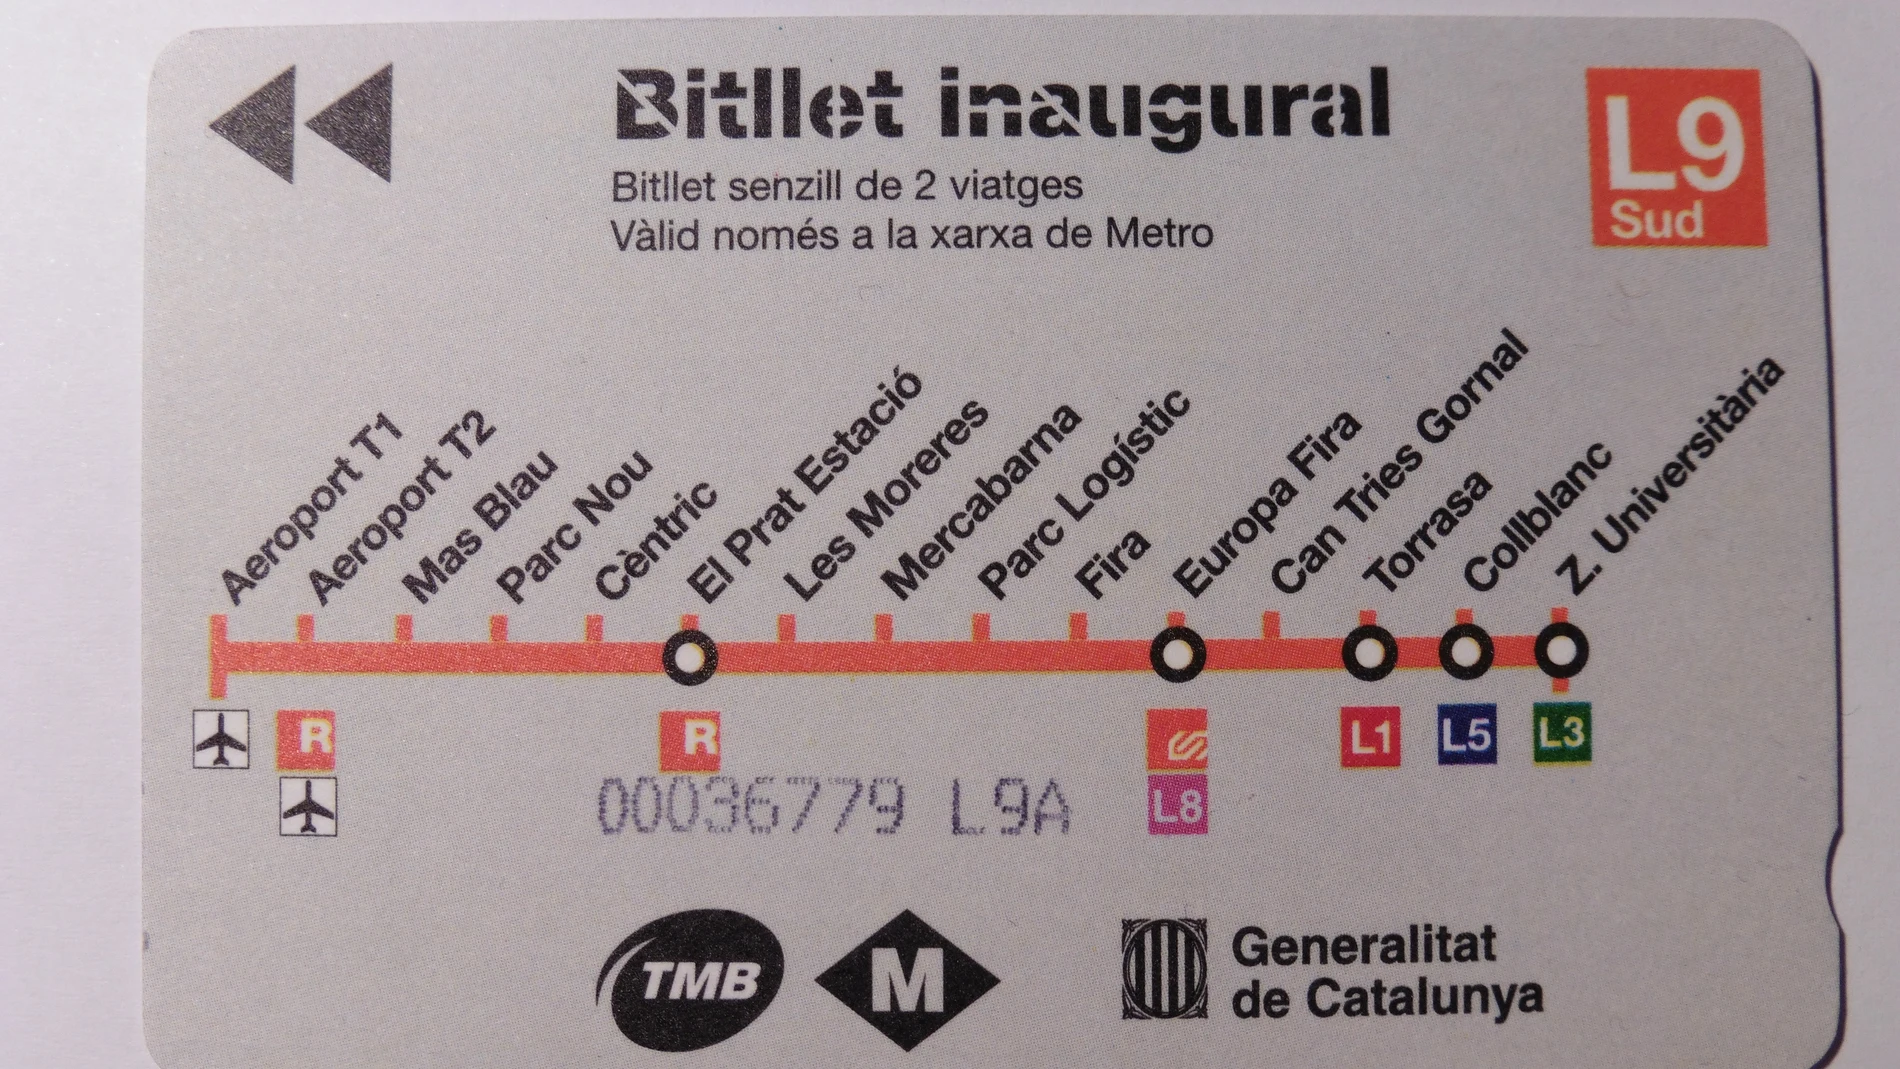 Efemérides de hoy 13 de diciembre de 2021. Billete inaugural de la línea 9 sur del metro de Barcelona.